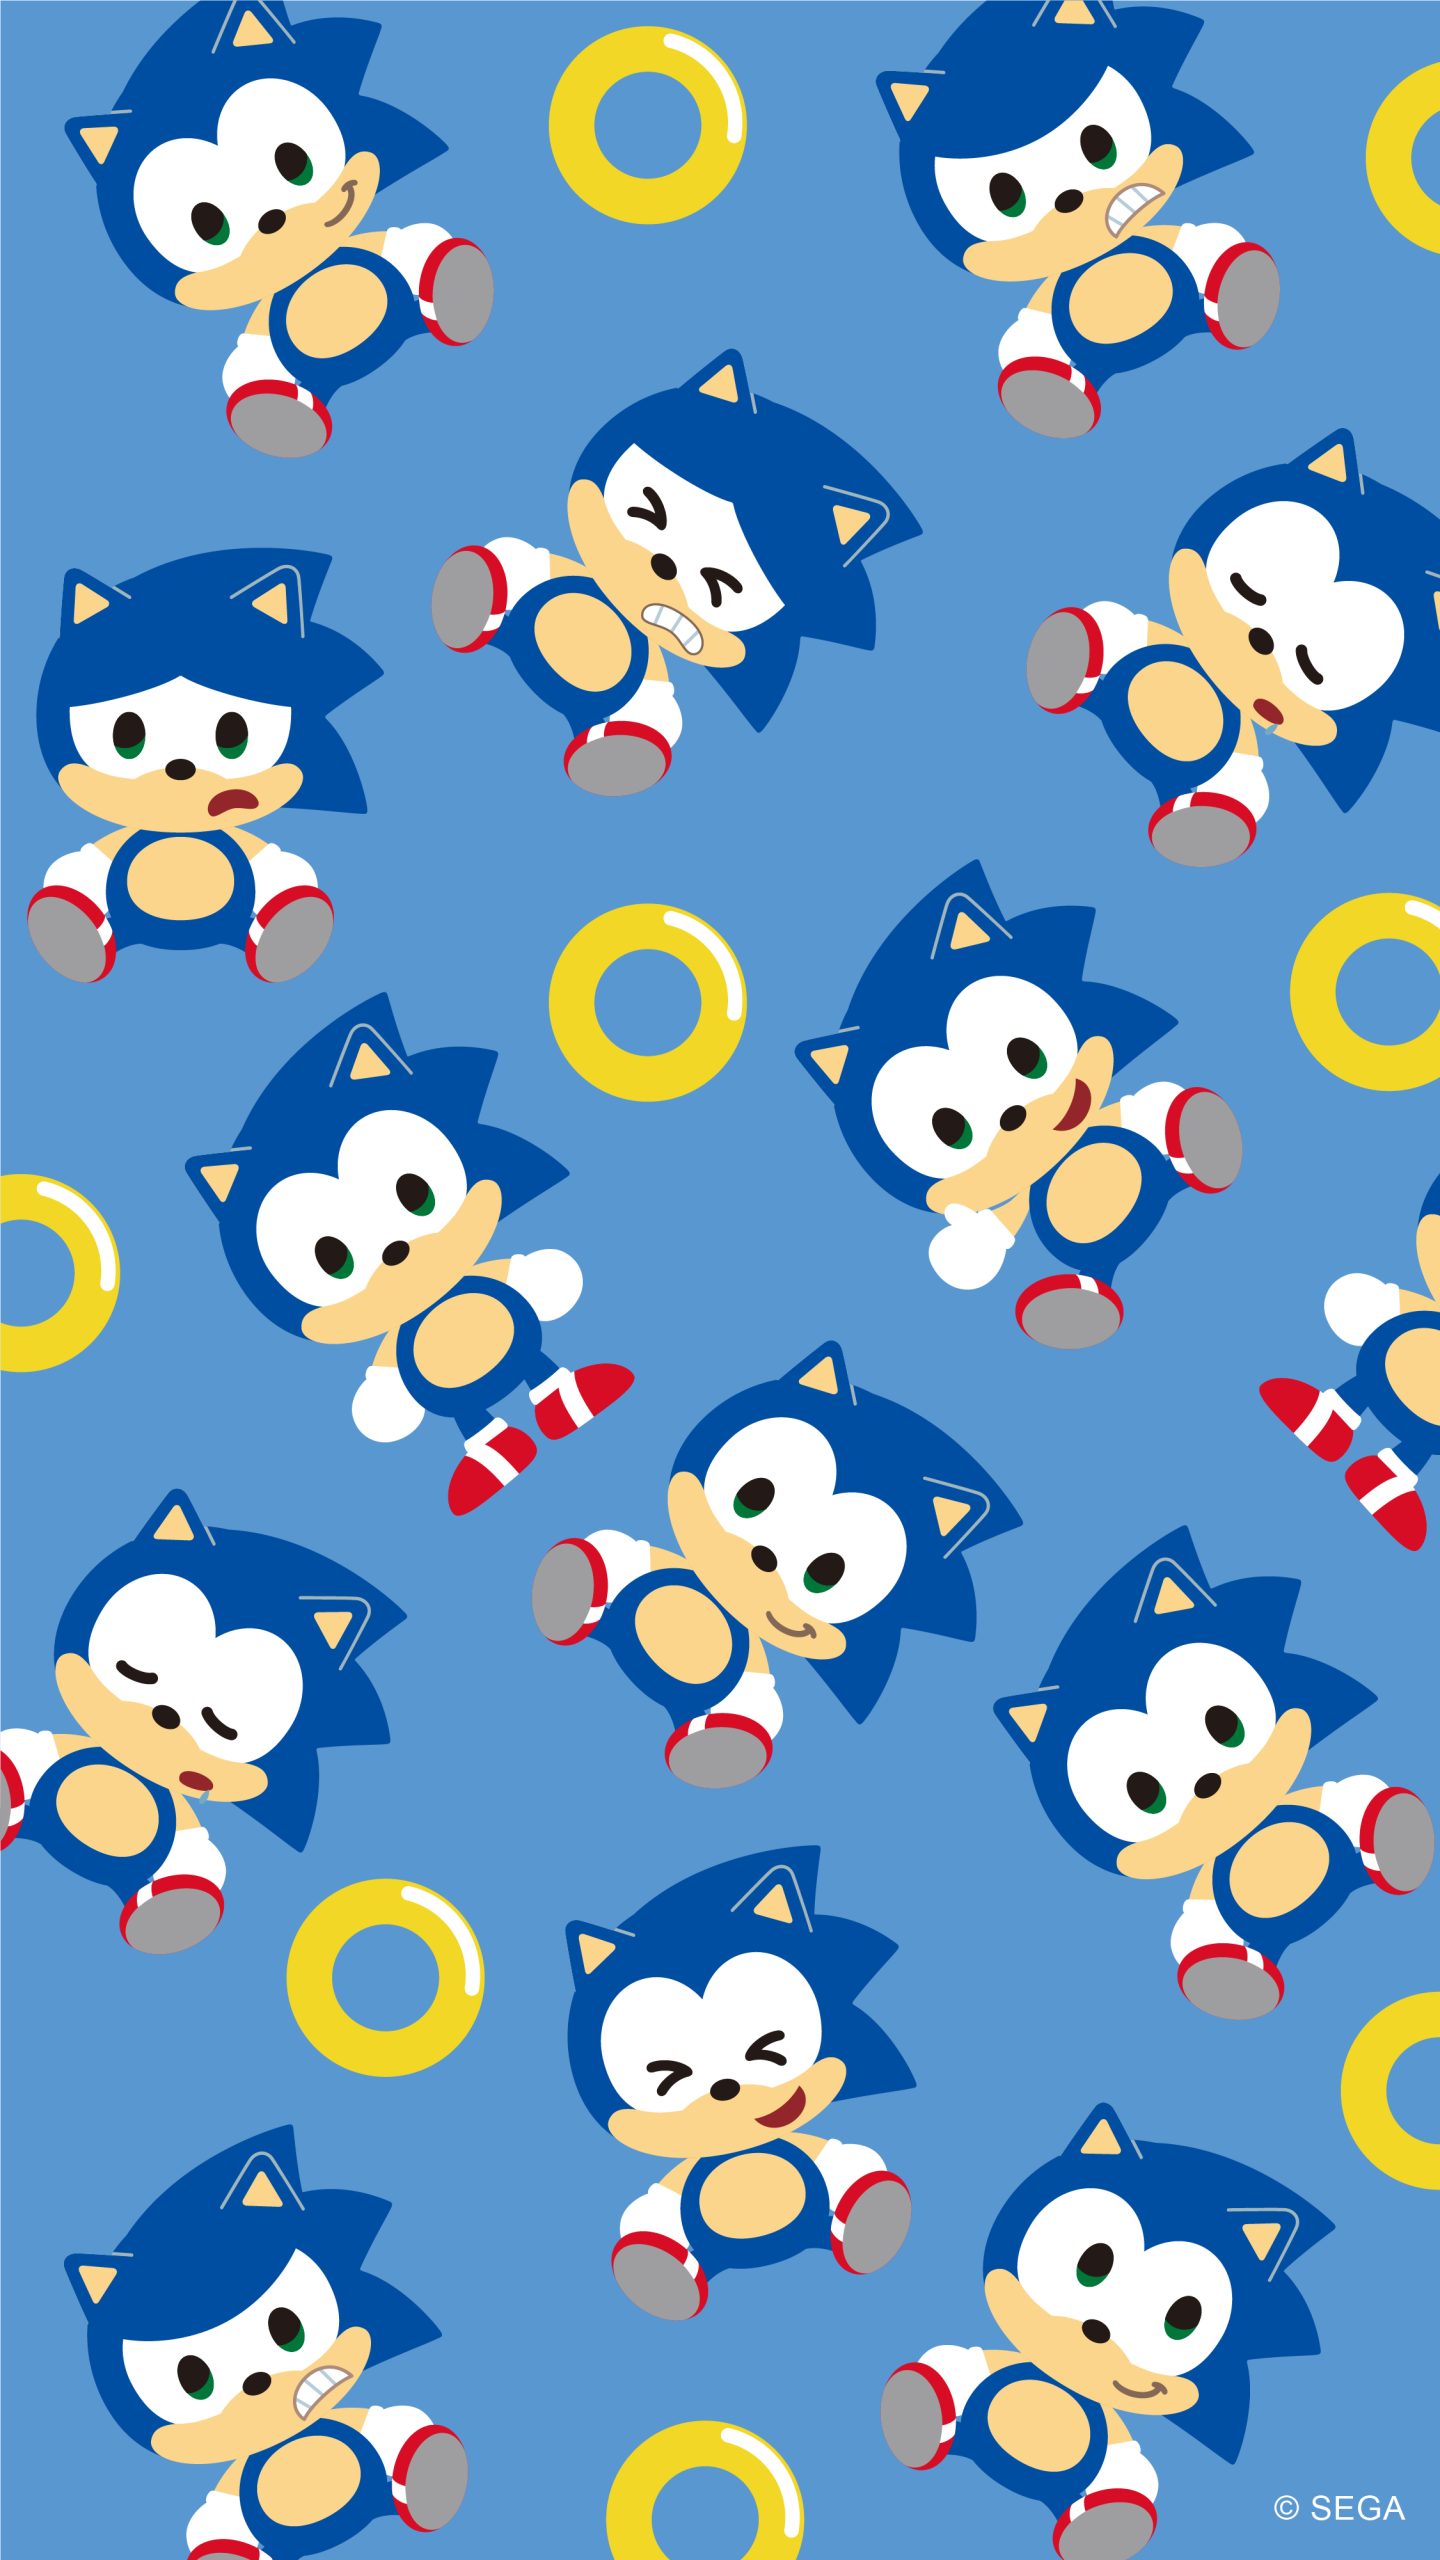 Sonic Adventure 2 Wallpaper Phone by PaleRiderz on DeviantArt